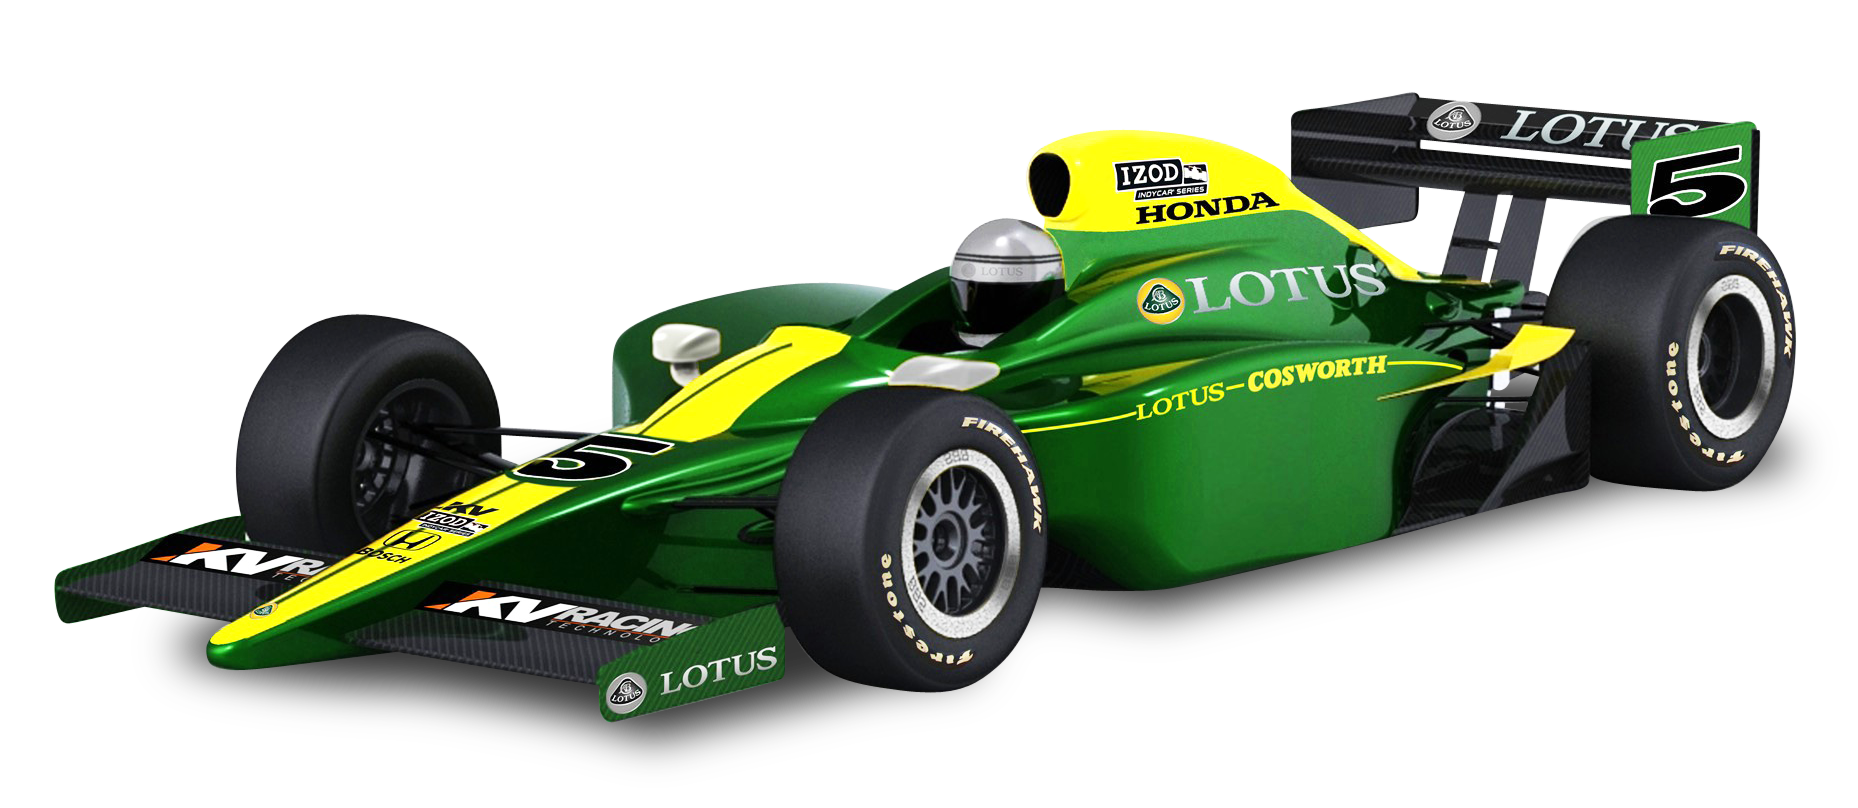 Green Lotus Cosworth Racing Car